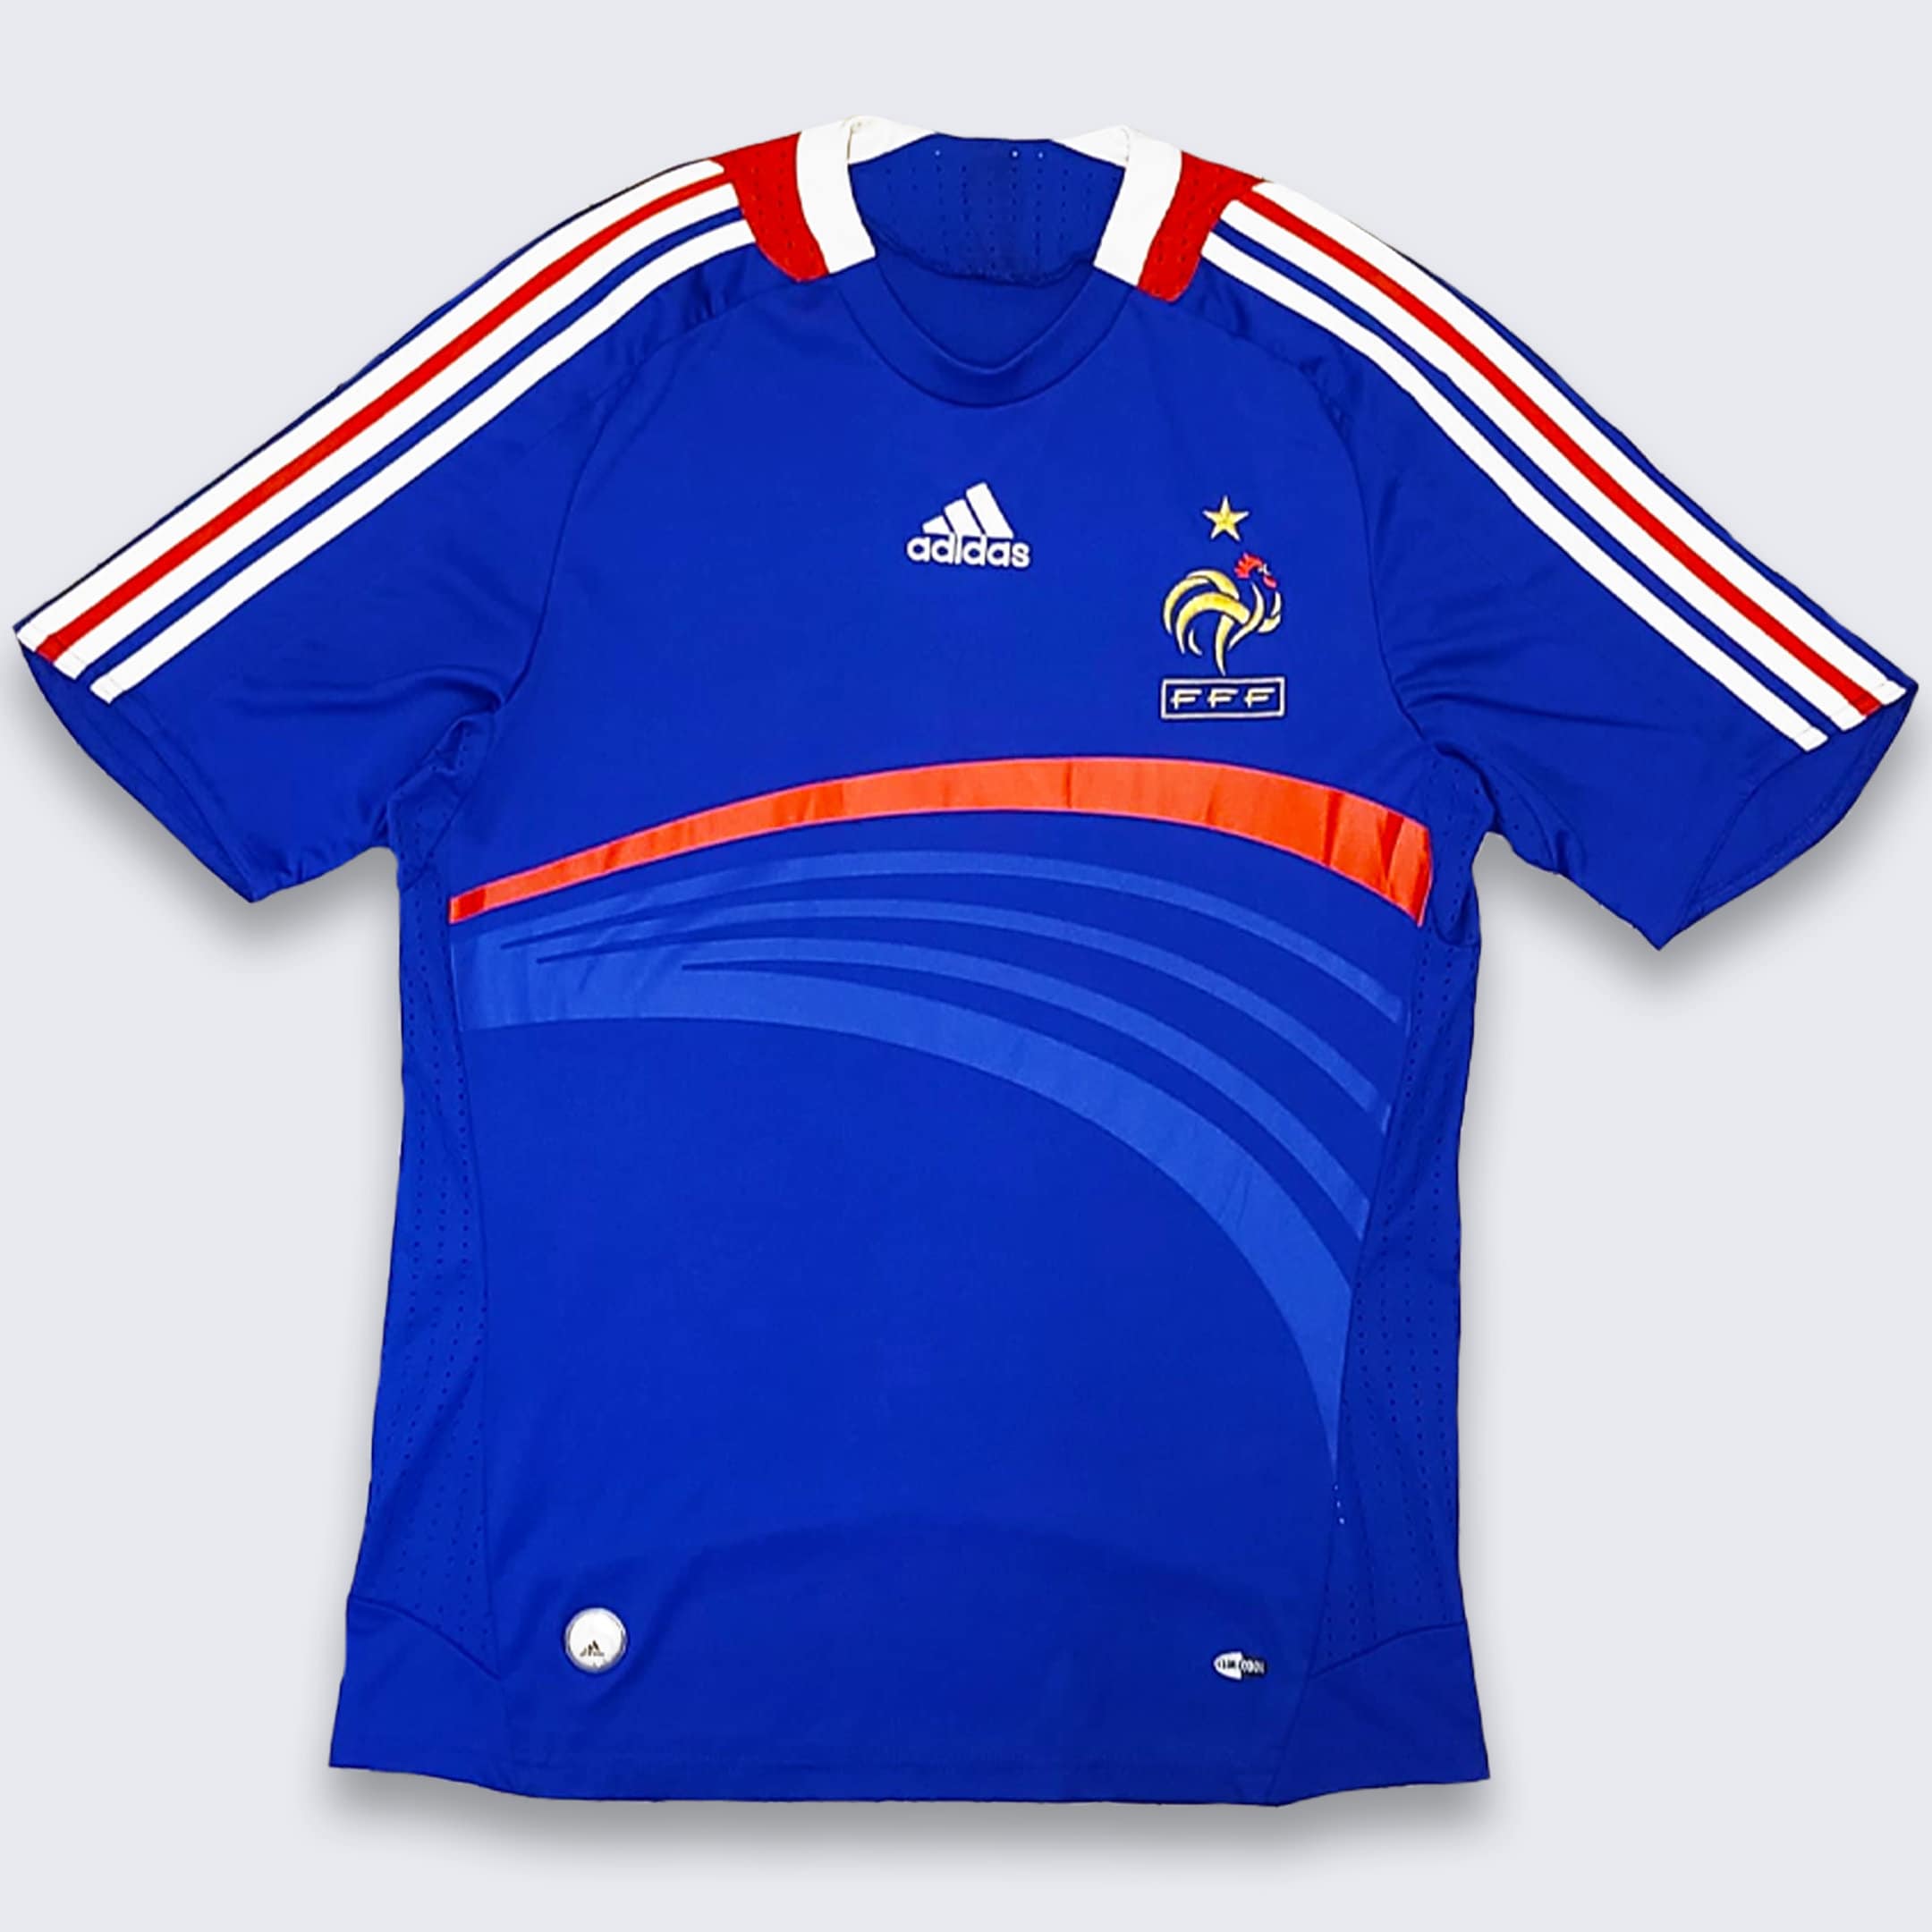 France Adidas 2007 2008 Soccer Shirt Etsy España